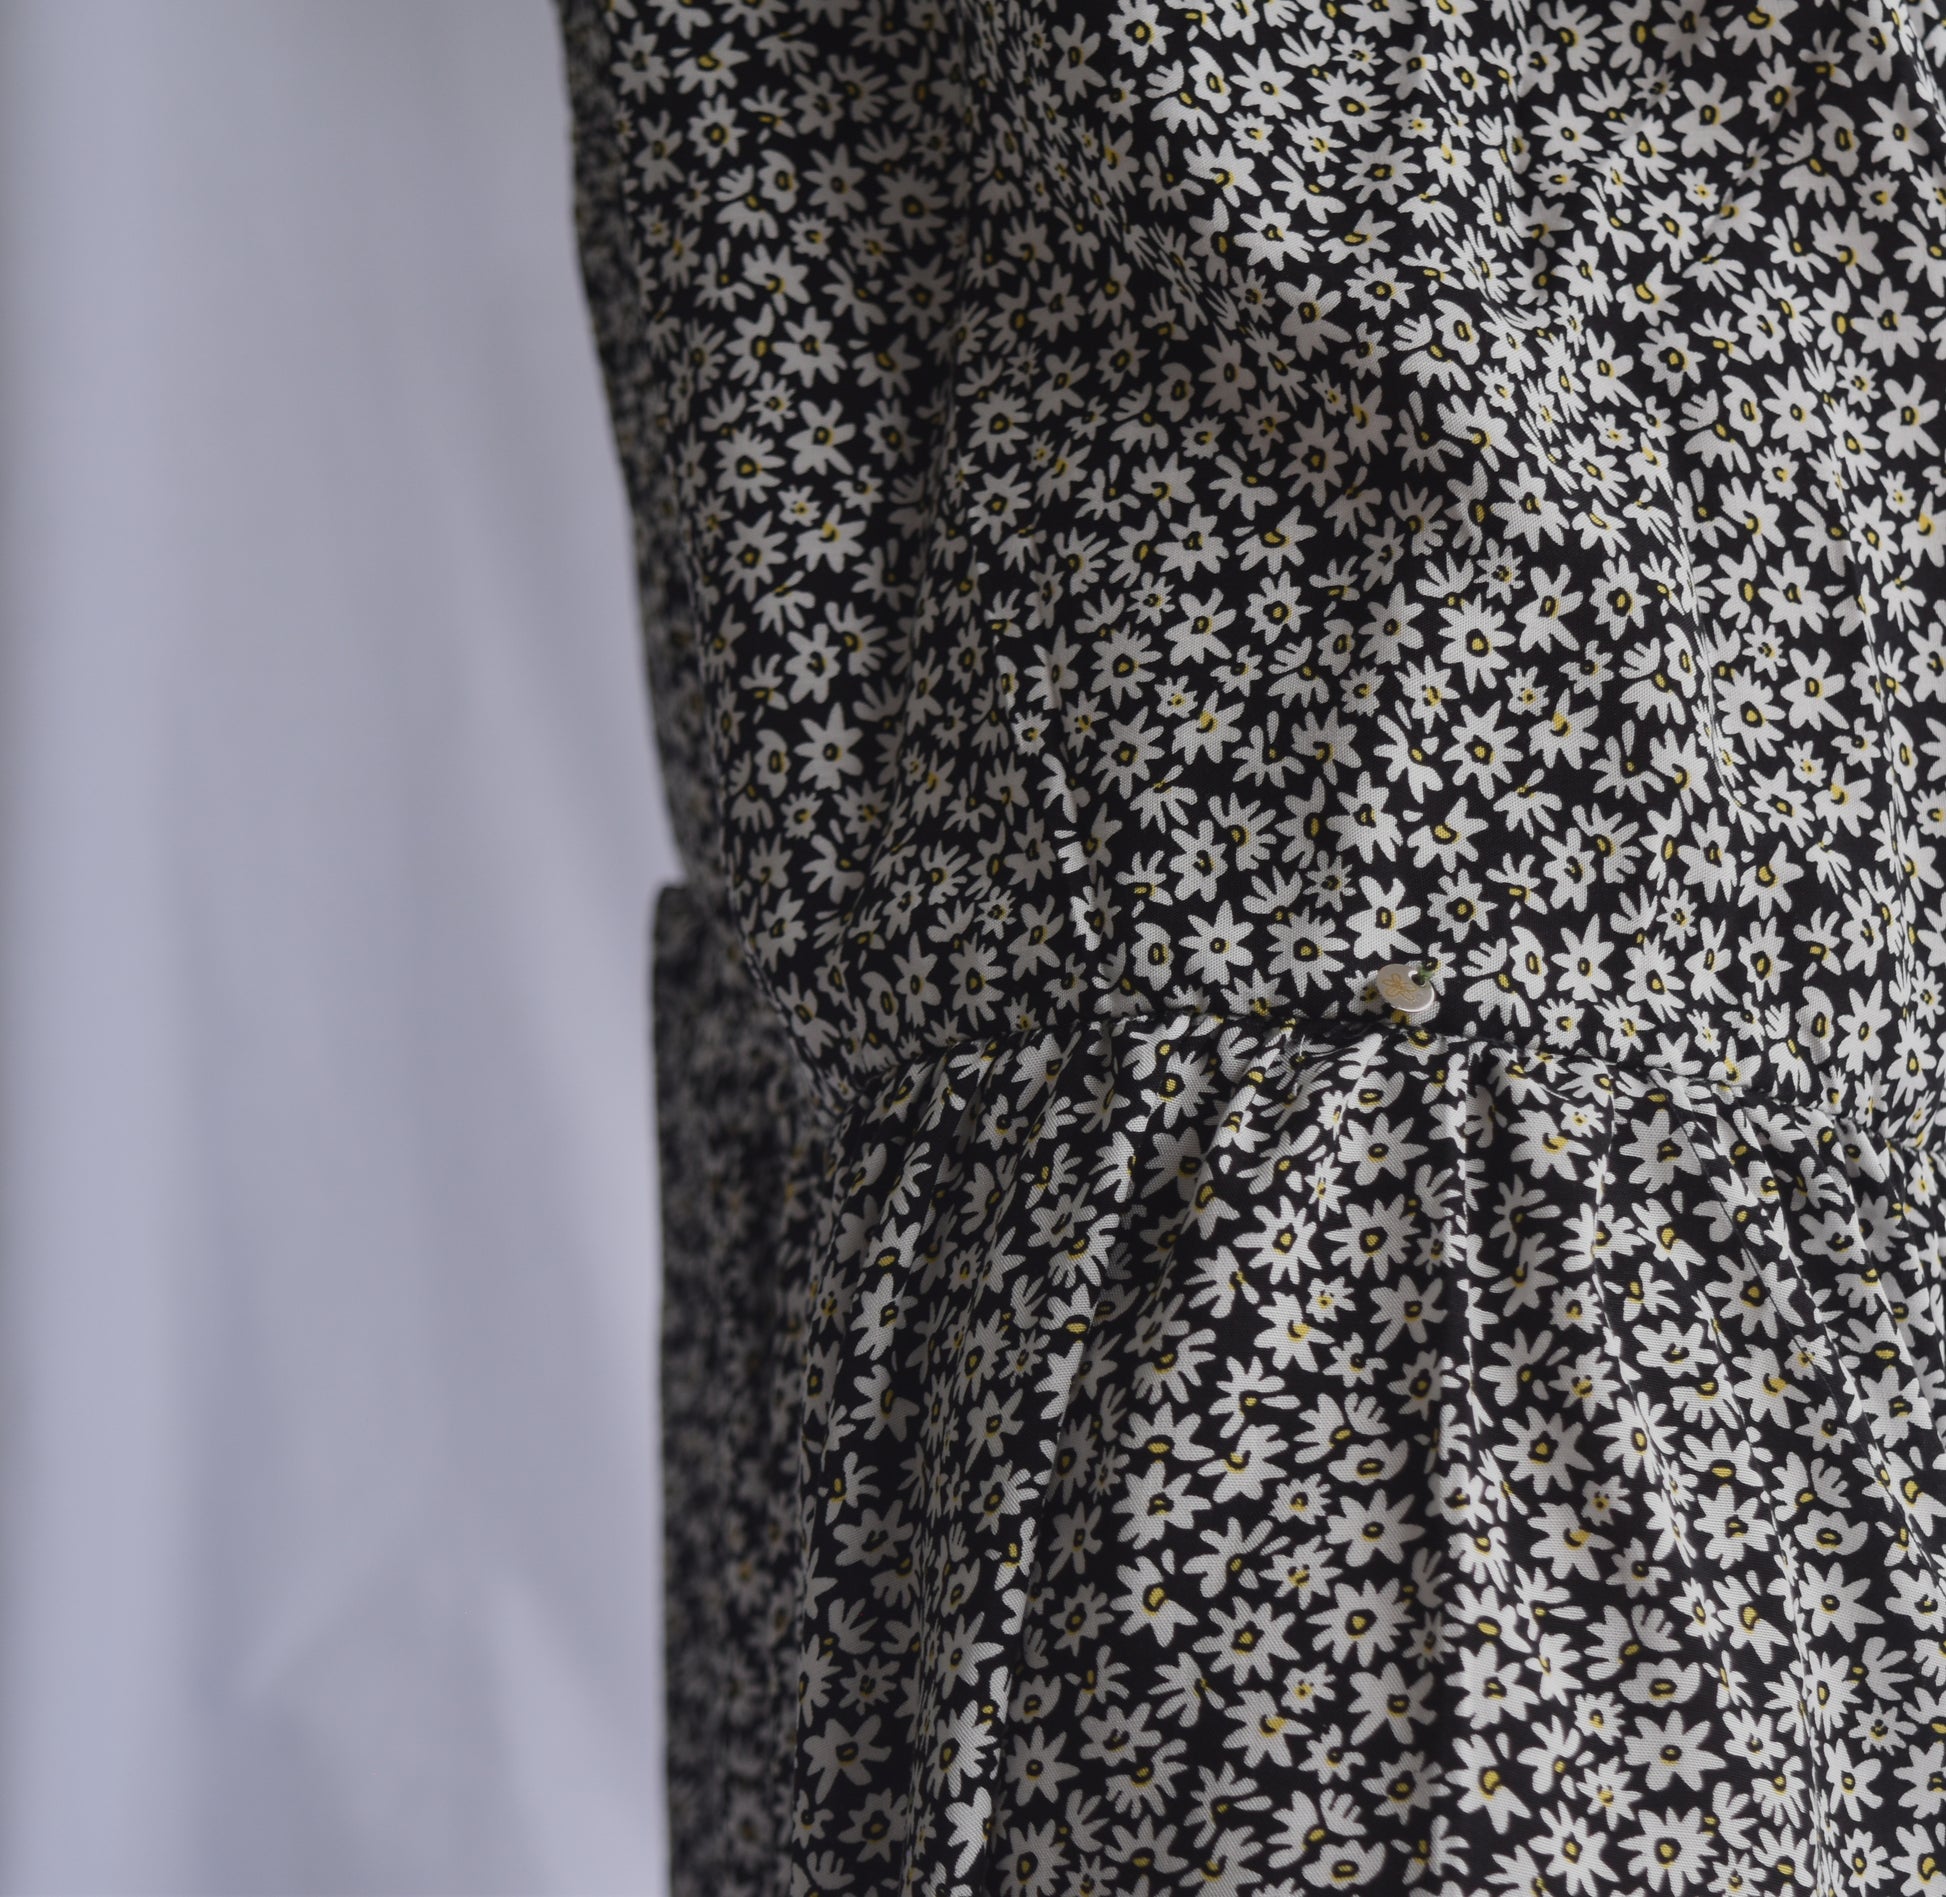  Falda midi estampada con mini print de flores, en chalis, con resorte en la cintura y bolero en punta hasta los tobillos